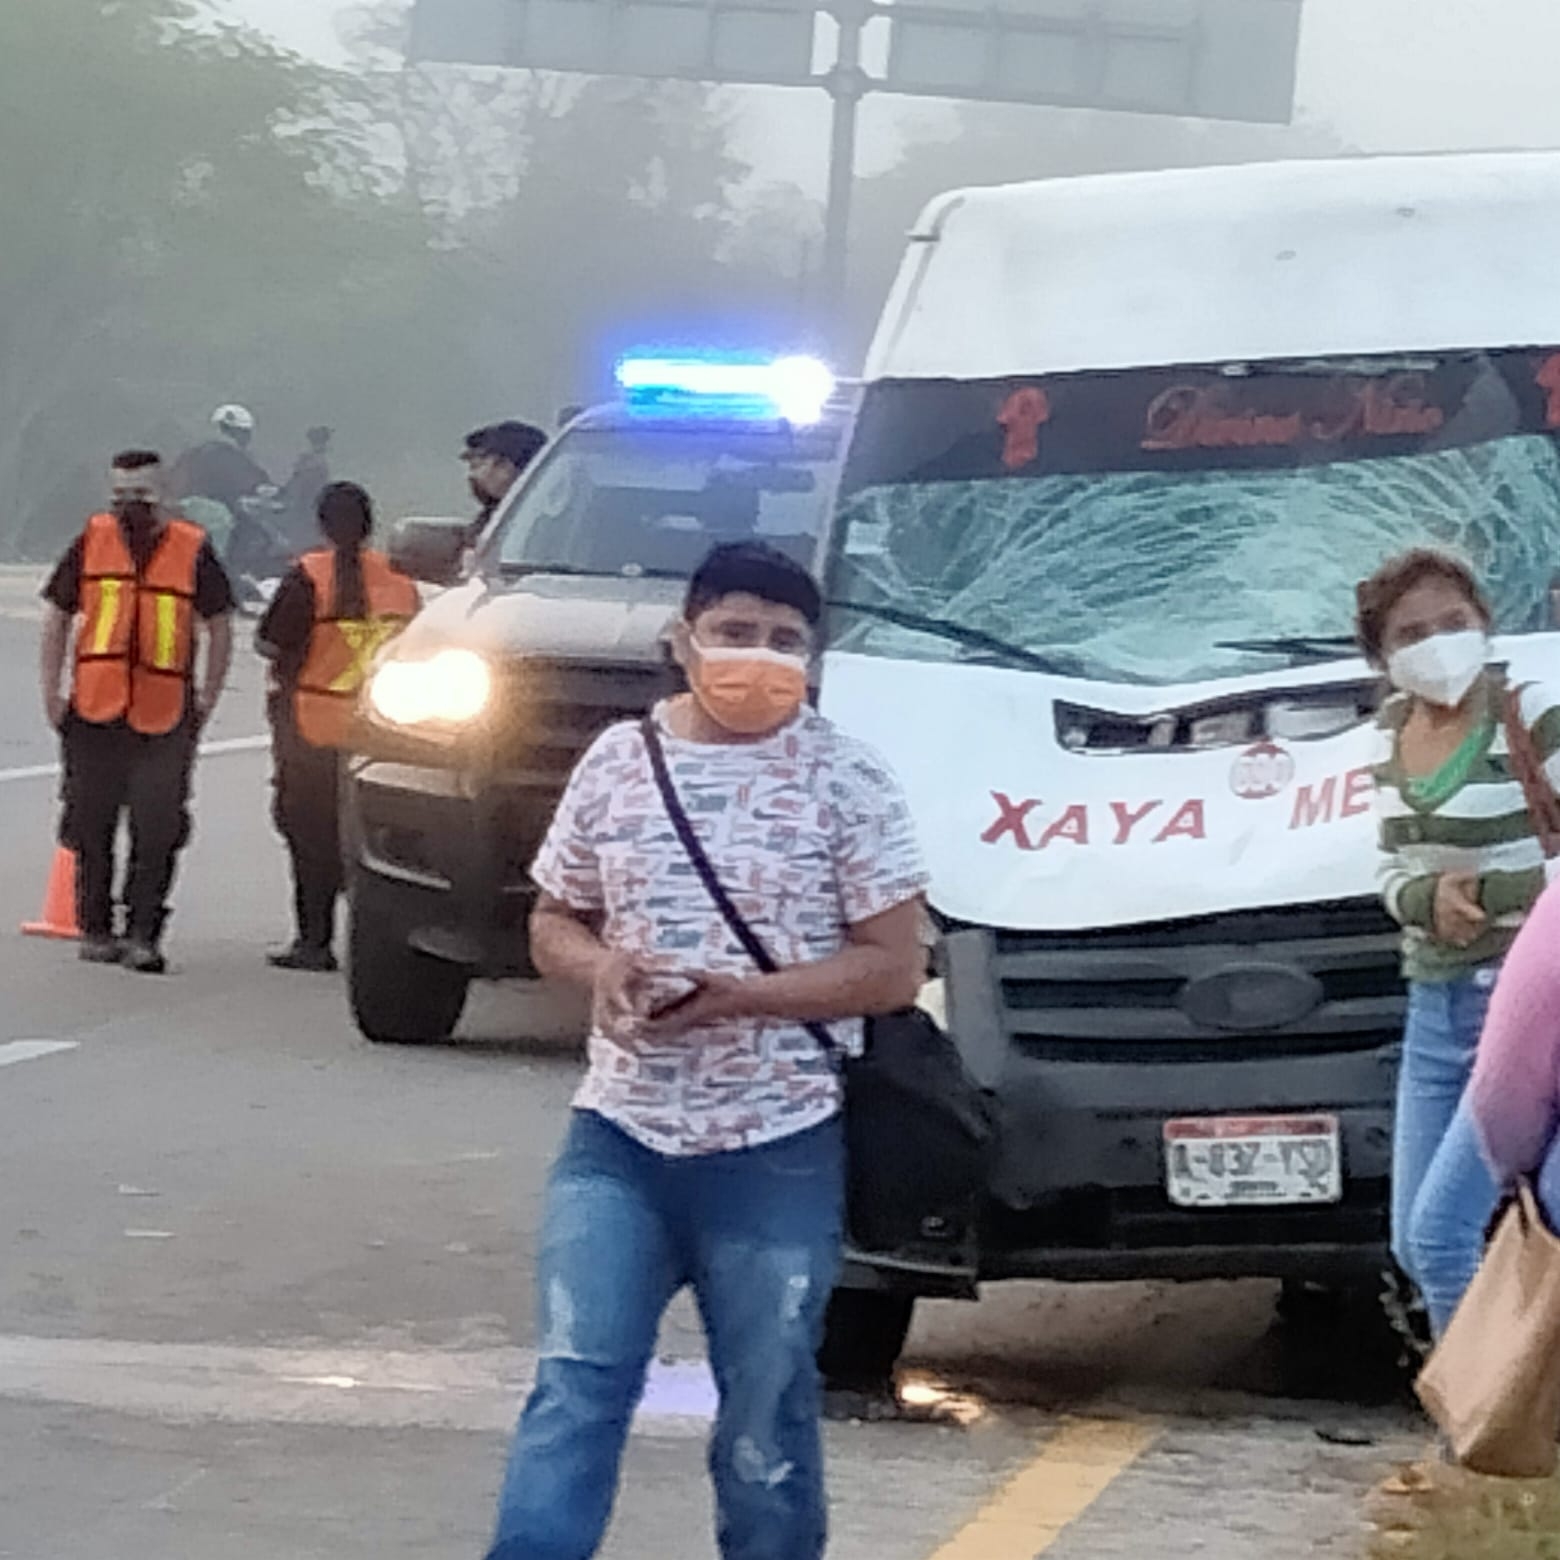 Combi de pasajeros atropella a motociclista sobre la ruta Xaya-Mérida